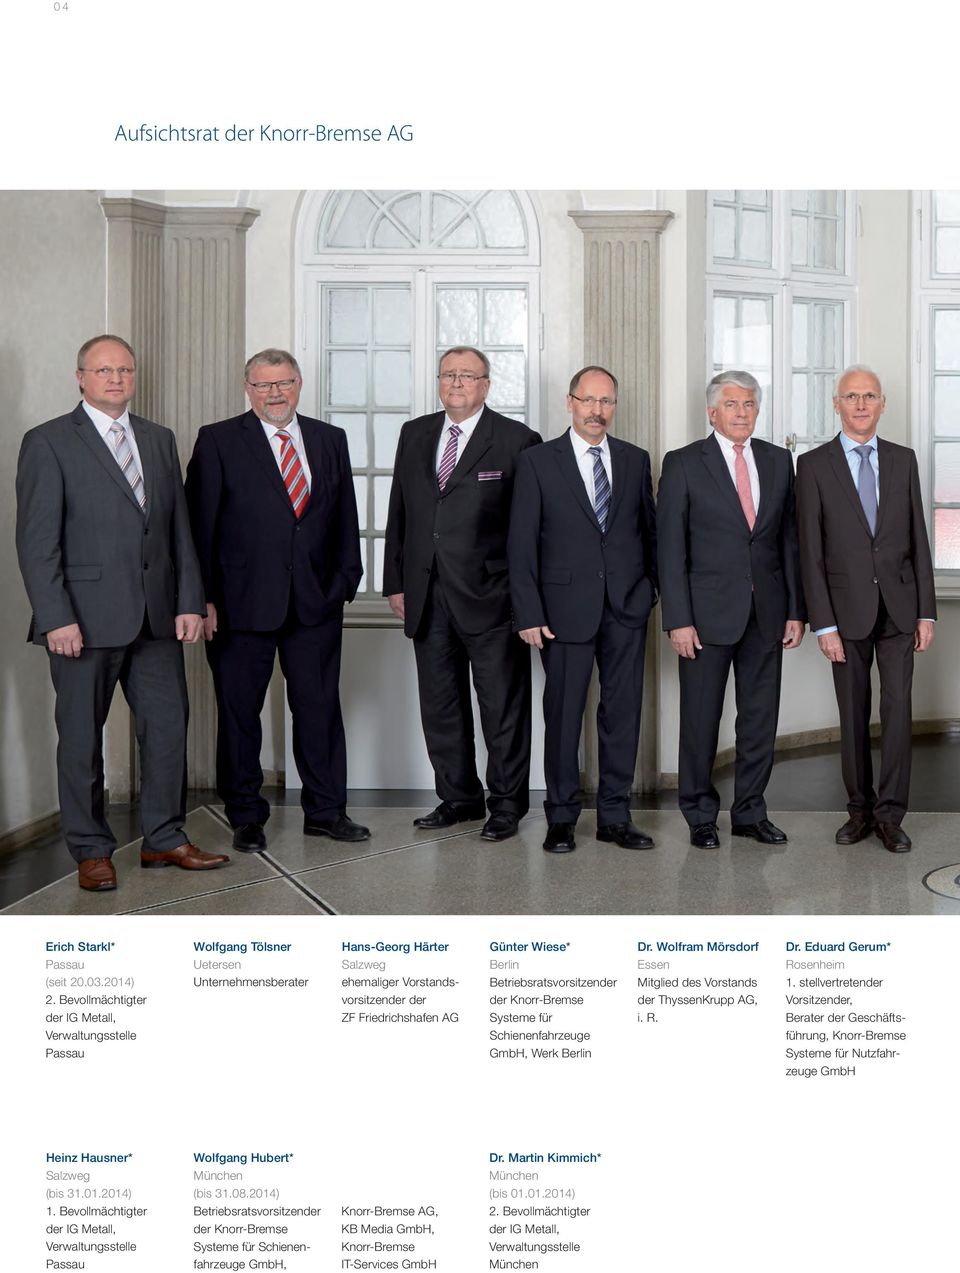 Bevollmächtigter vorsitzender der der Knorr-Bremse der ThyssenKrupp AG, Vorsitzender, der IG Metall, ZF Friedrichshafen AG Systeme für i. R.